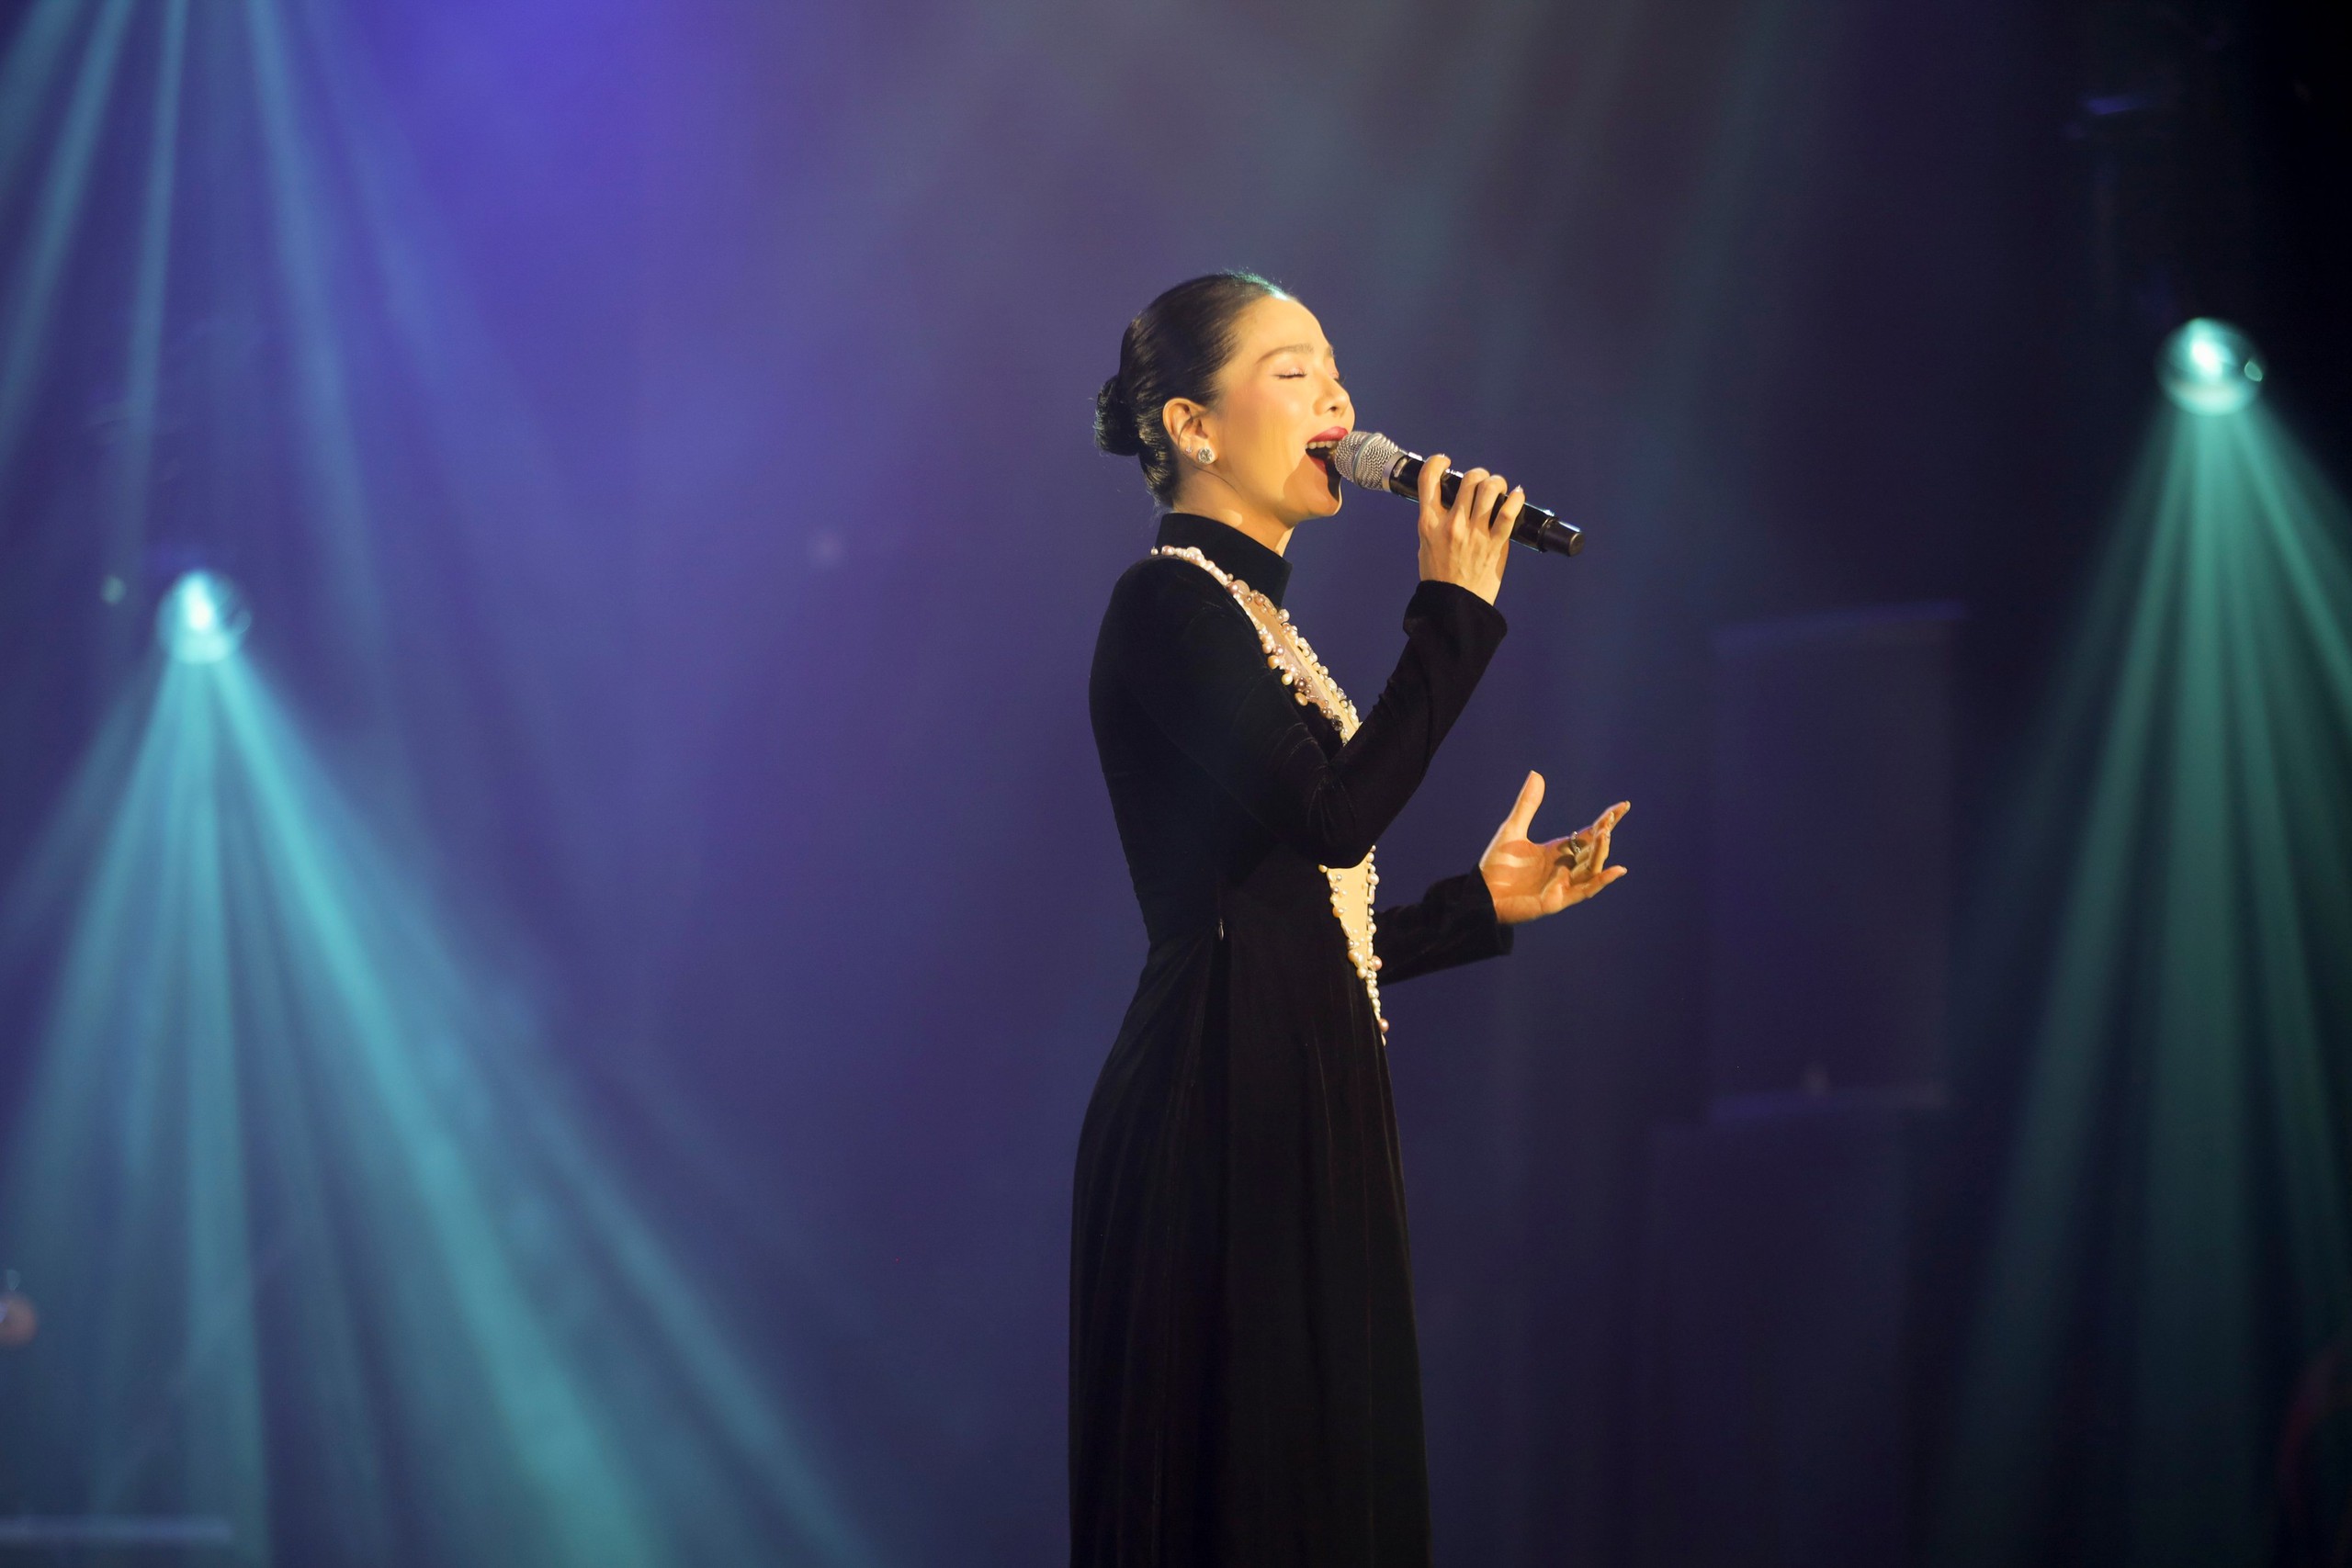 Đêm nhạc Lam Phương: Tràn ngập hơi thở mới, dàn ca sĩ thăng hoa, xúc động chia sẻ về lần gặp cố nhạc sĩ - Ảnh 4.